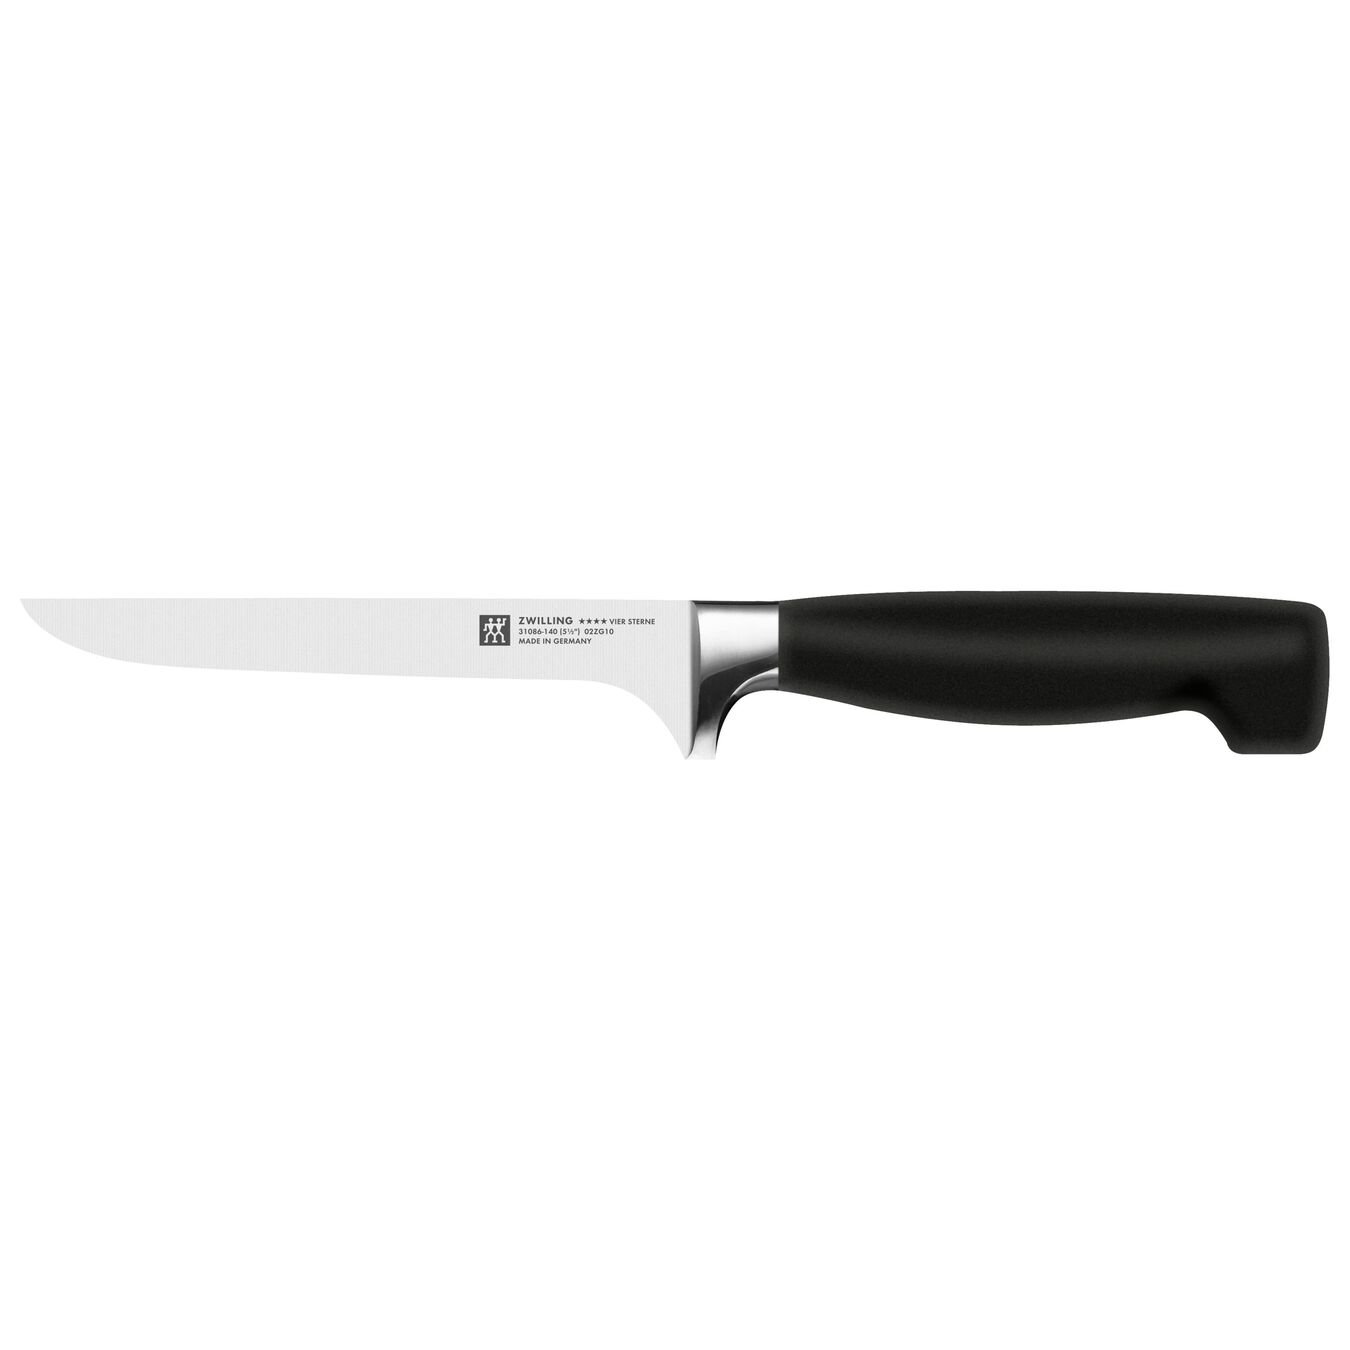 5.5 inch Boning knife,,large 1